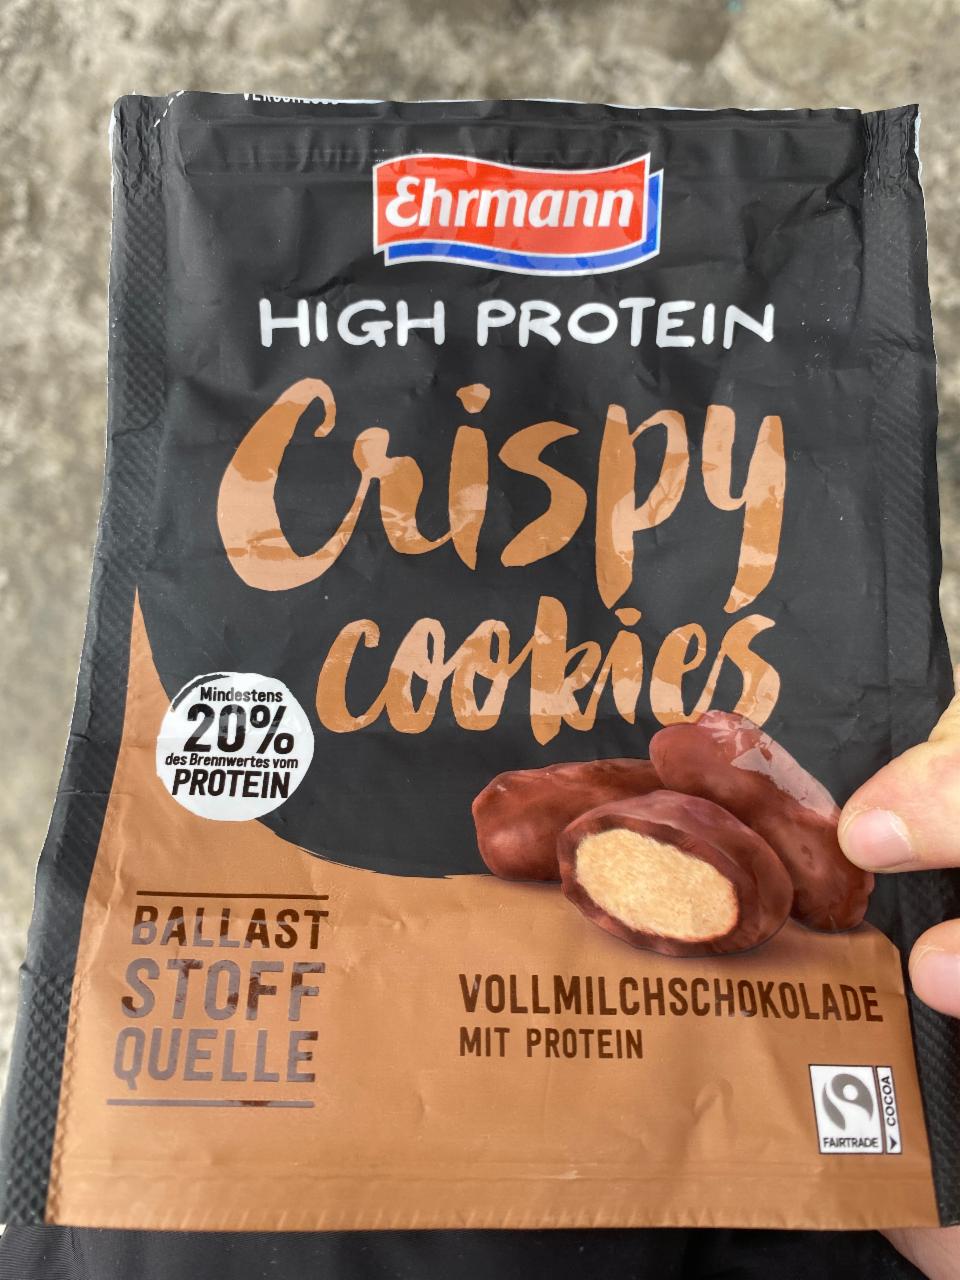 Фото - Crispy Cookies Vollmilchschokolade mit protein Ehrmann